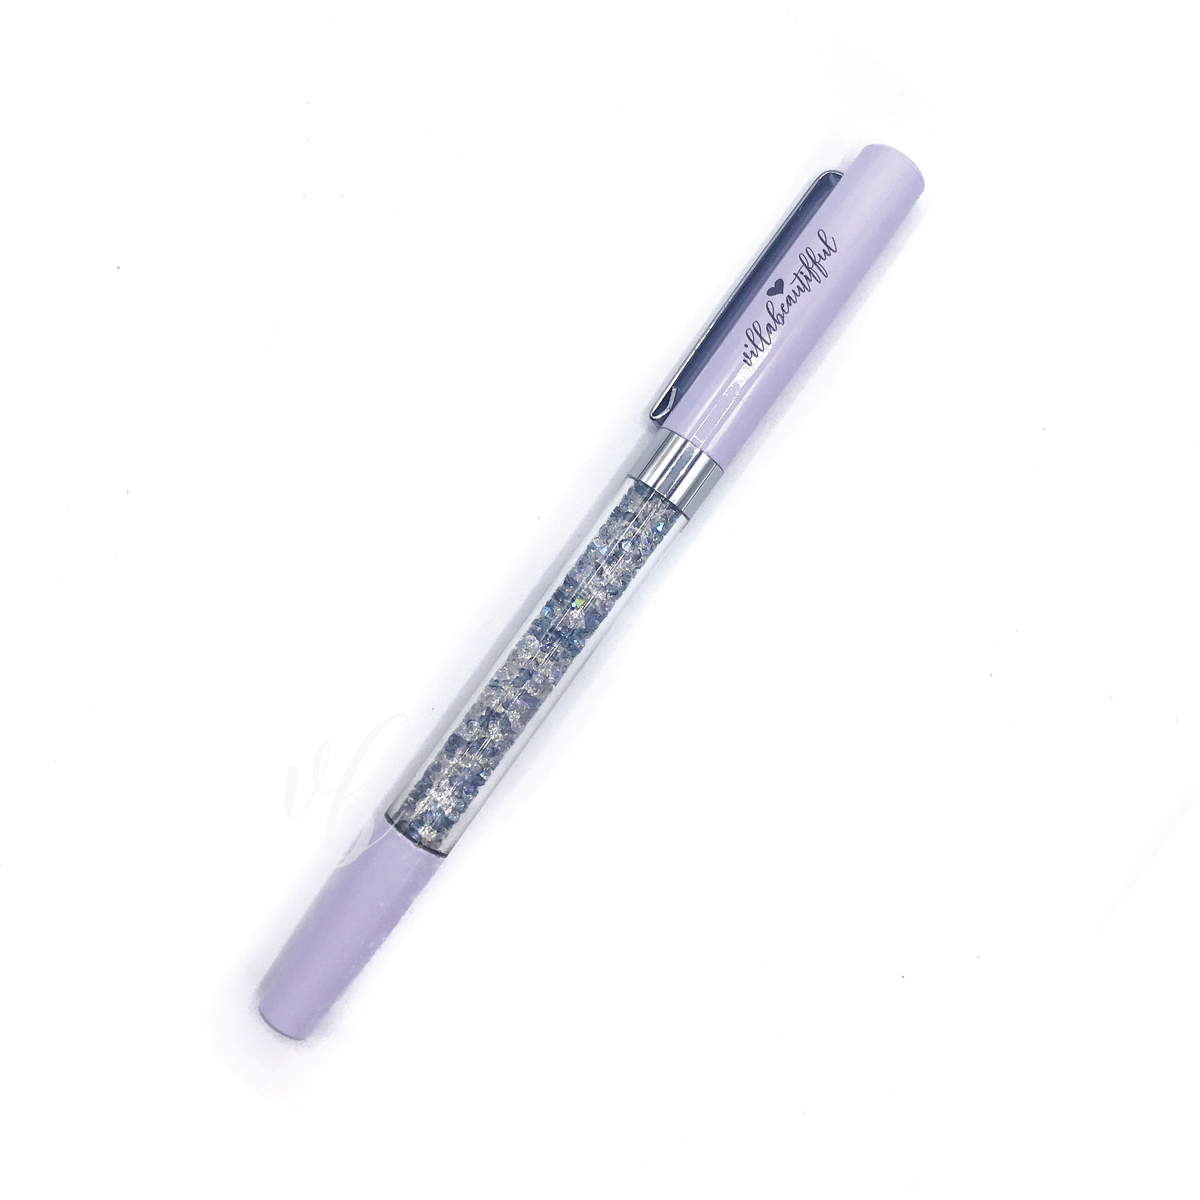 Jetsetter Imperfect Crystal VBPen | limited kit pen